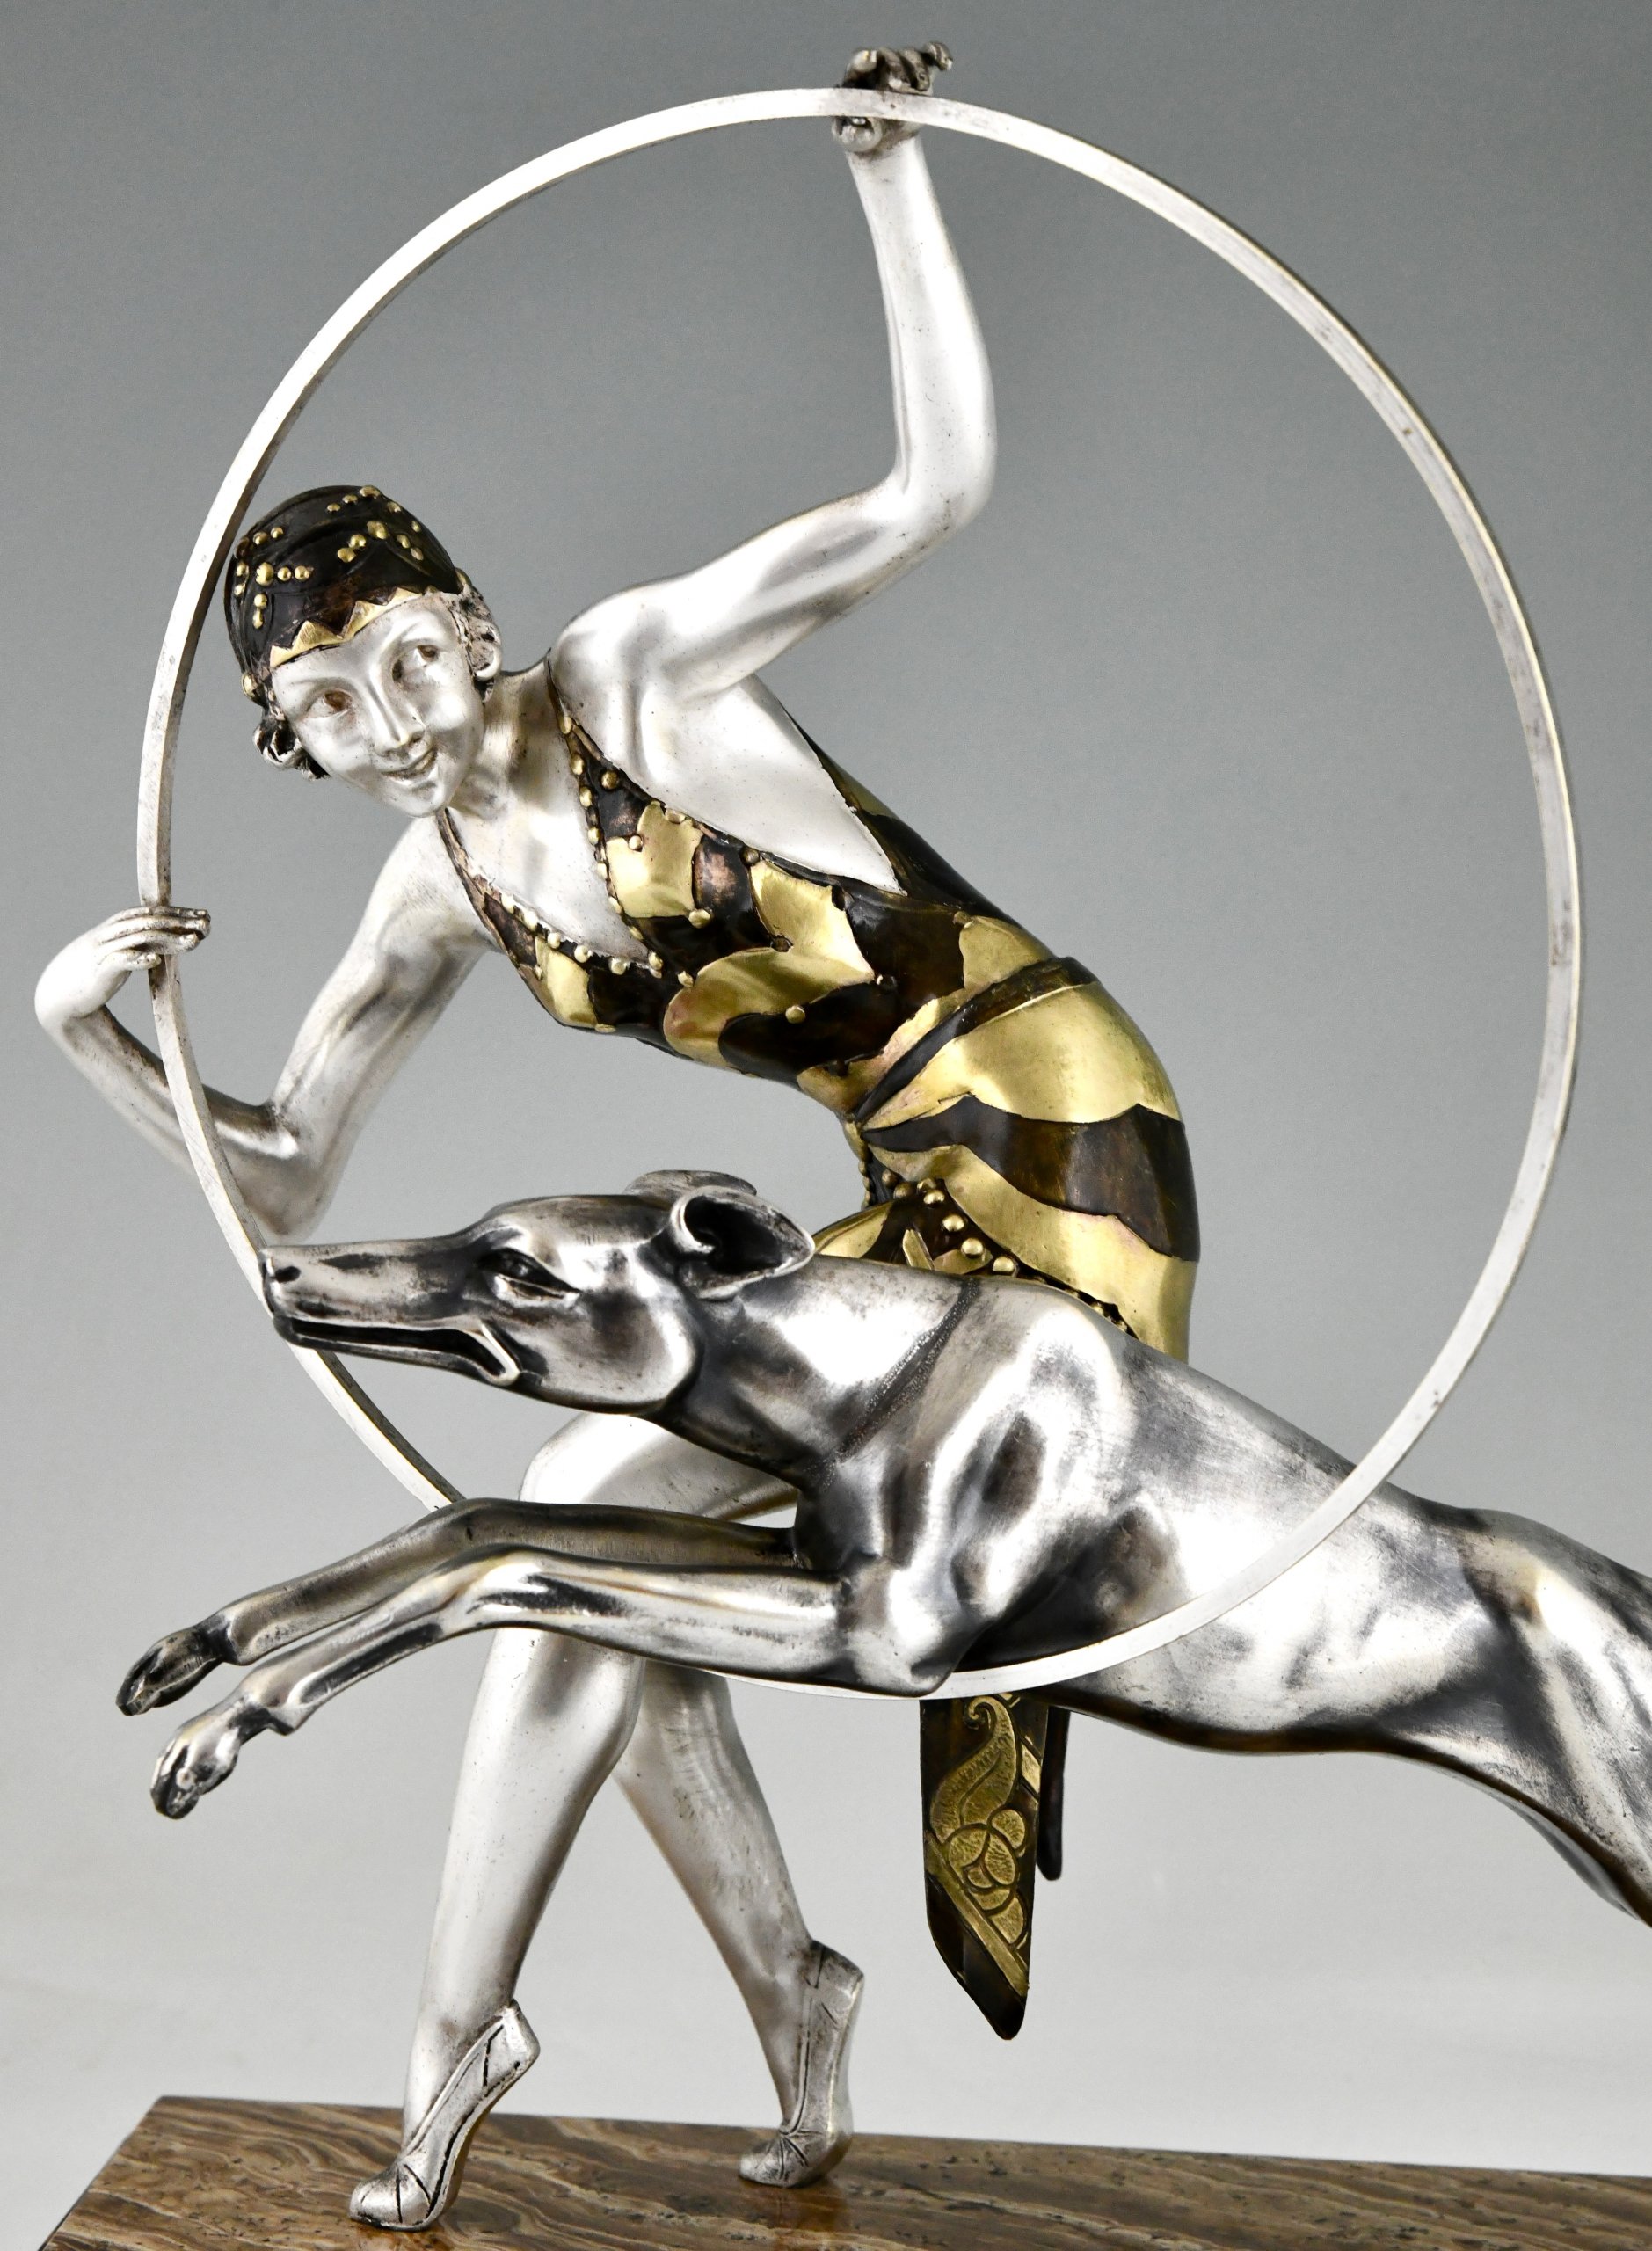 Art Deco sculpture hoop dancer with dog.